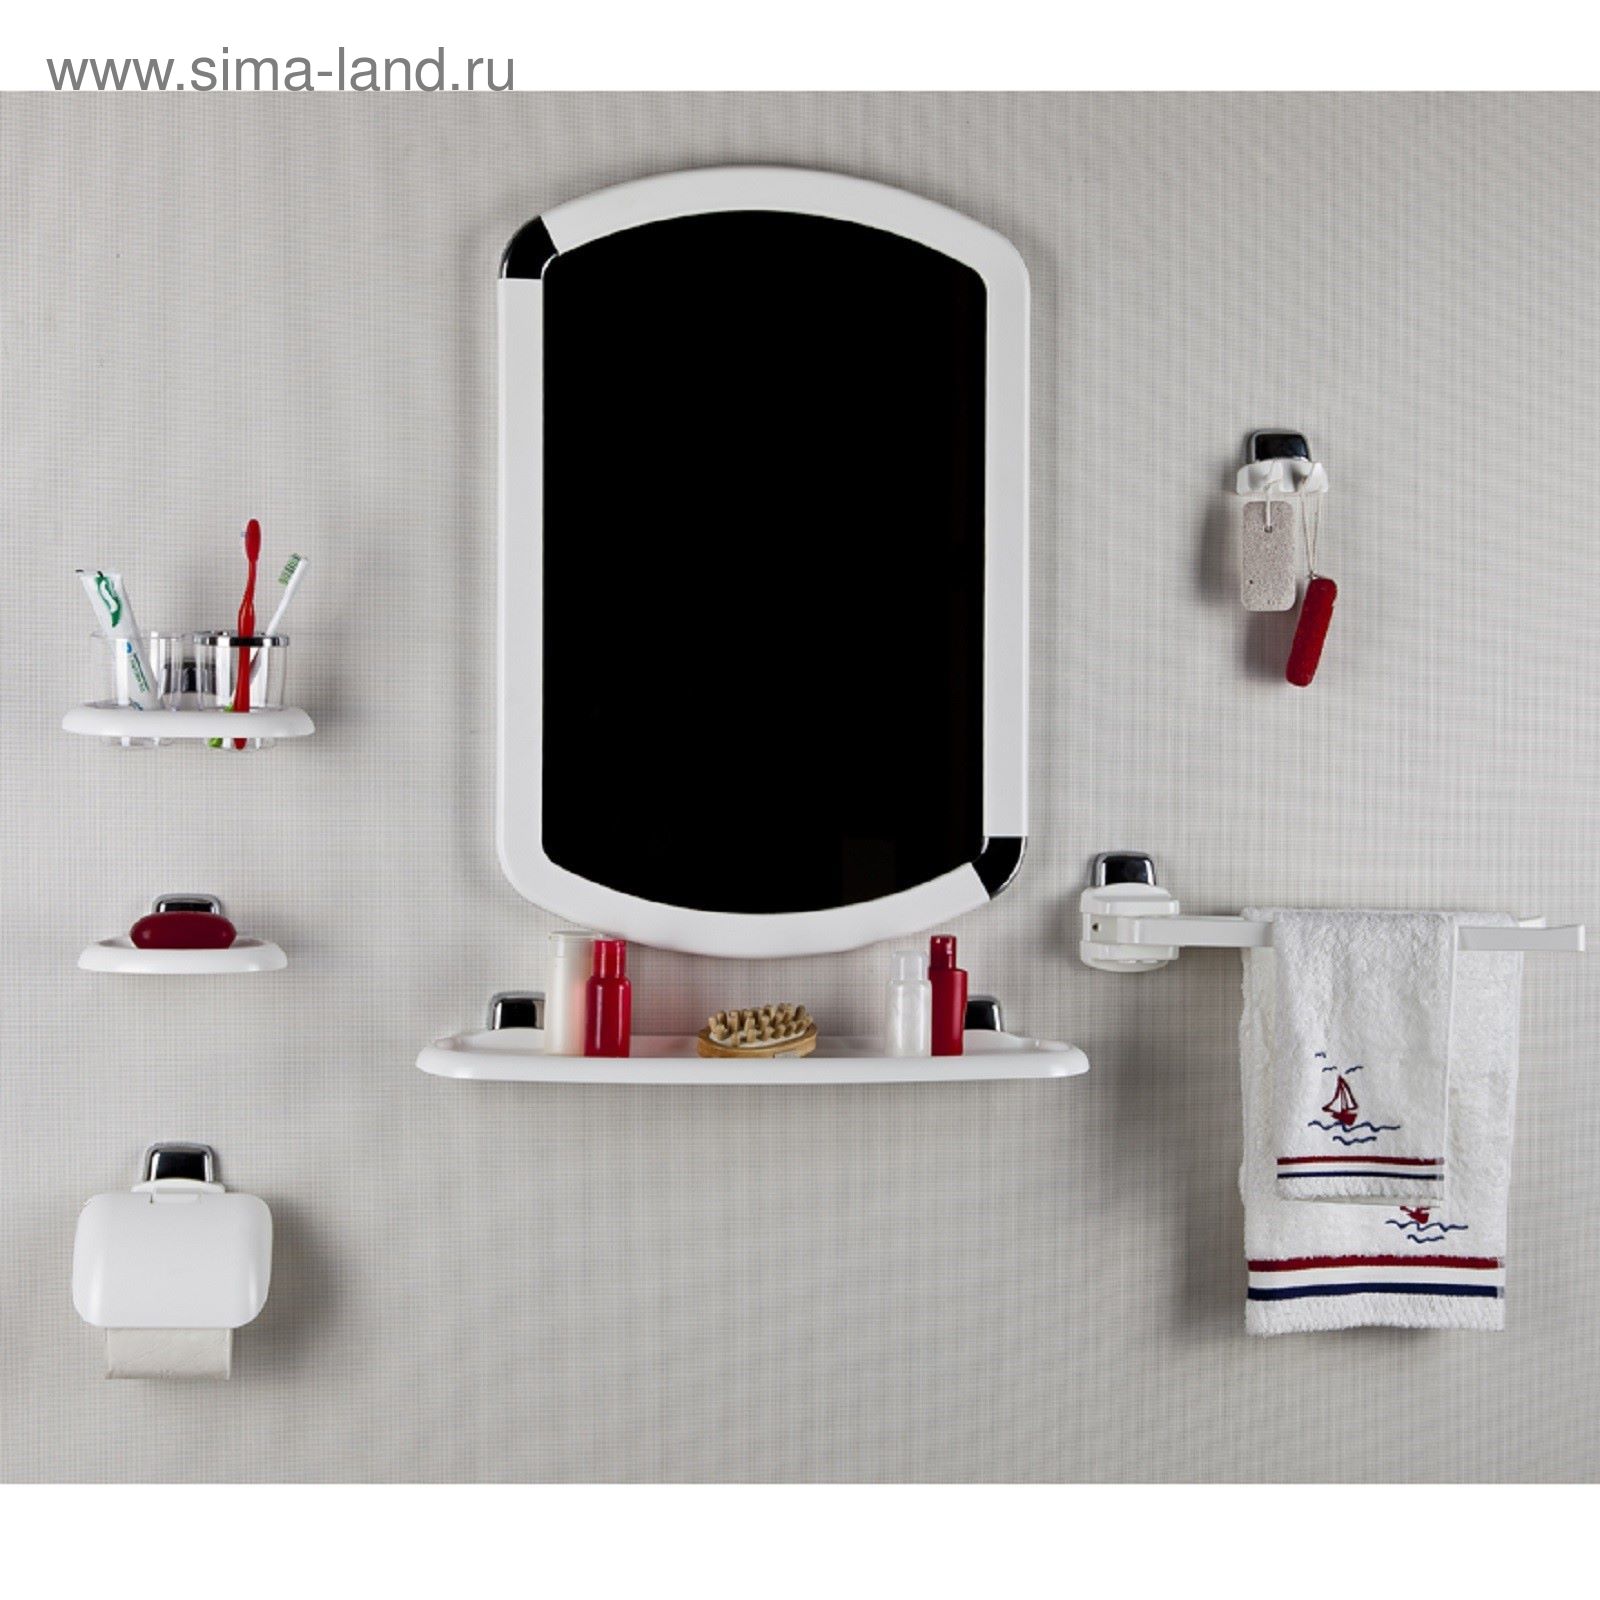 Набор для ванной с зеркалом. Комплект для ванной комнаты с зеркалом. Набор для ванной комнаты пластиковый. Зеркало для ванной пластмассовое.